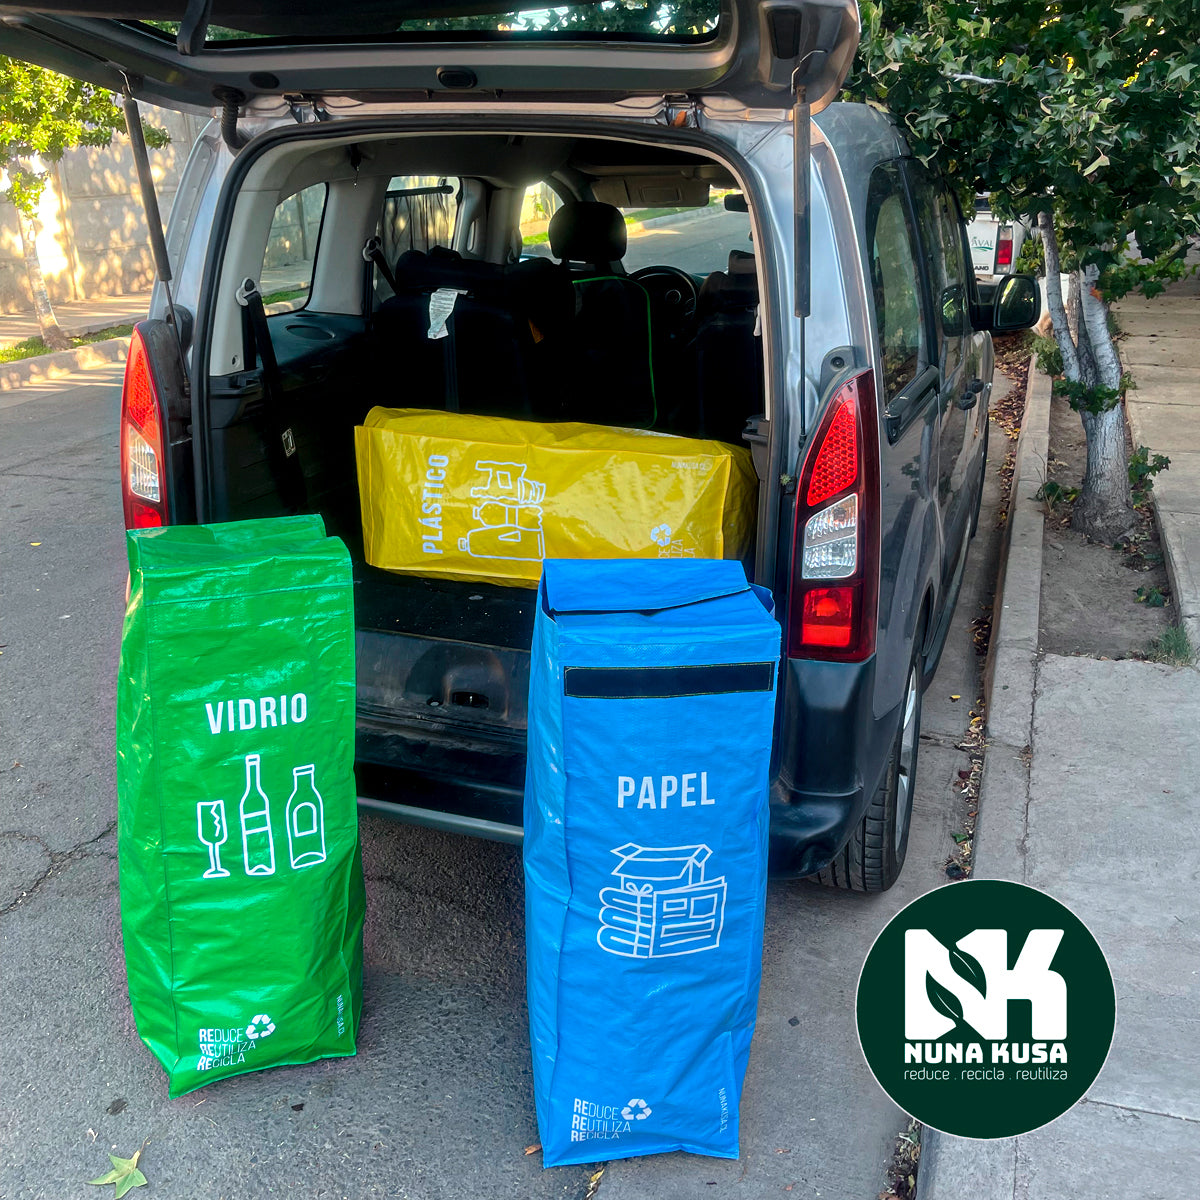 Kit de reciclaje "Nuna 120"